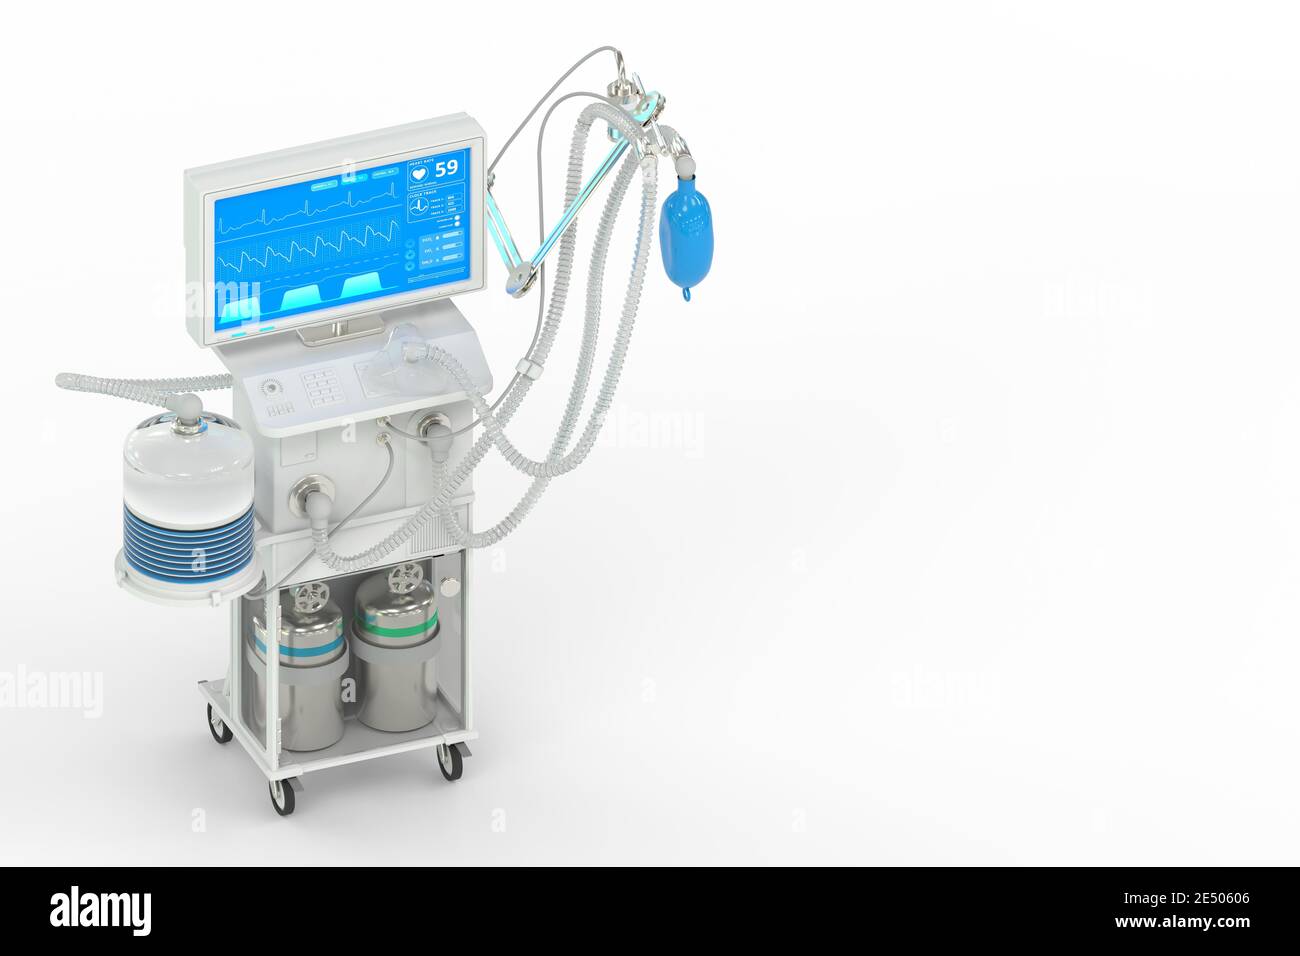 Medizinische 3D-Illustration, ICU künstliche Lungenventilator mit fiktiven Design isometrische Ansicht isoliert auf weiß - Stop Coronavirus Konzept Stockfoto